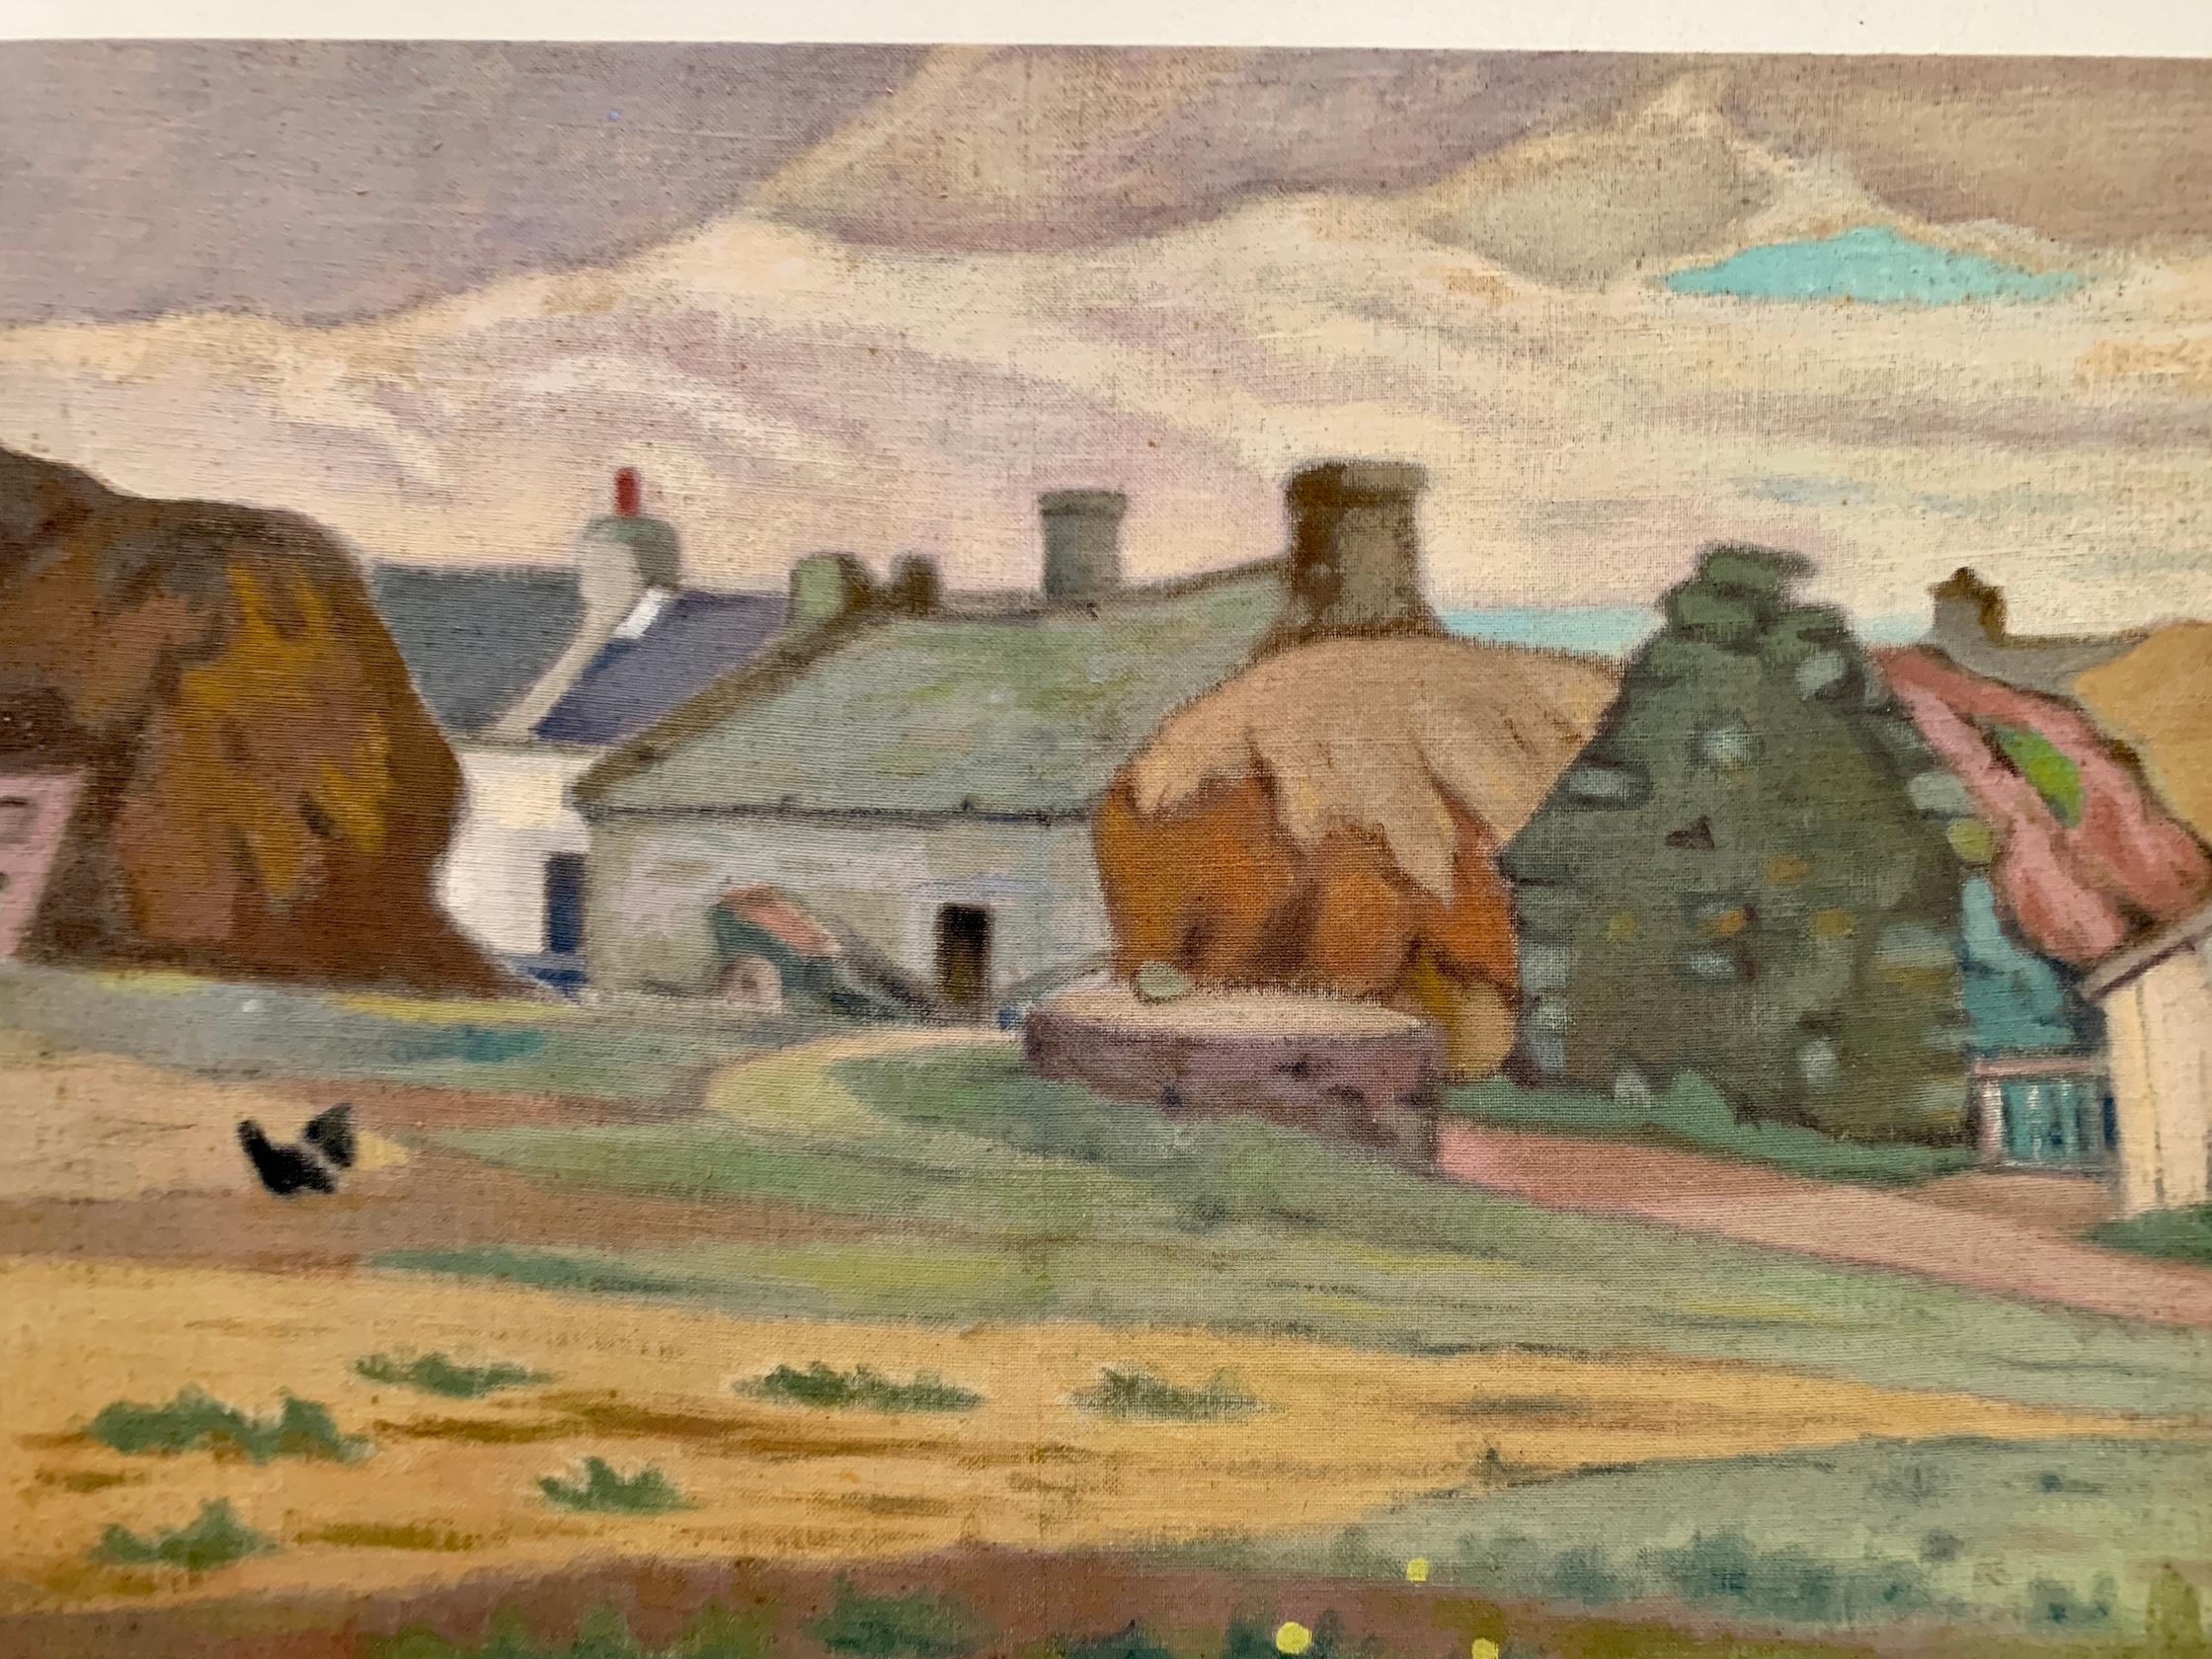 Mitte des 20. Jahrhunderts Impressionistische Szene, französische Landschaft mit Landhaus

Der Maler war um die Mitte des 20. Jahrhunderts tätig und malte Landschaften, Porträts und Stadtszenen. 

Es handelt sich um die einzige Brückenszene aus